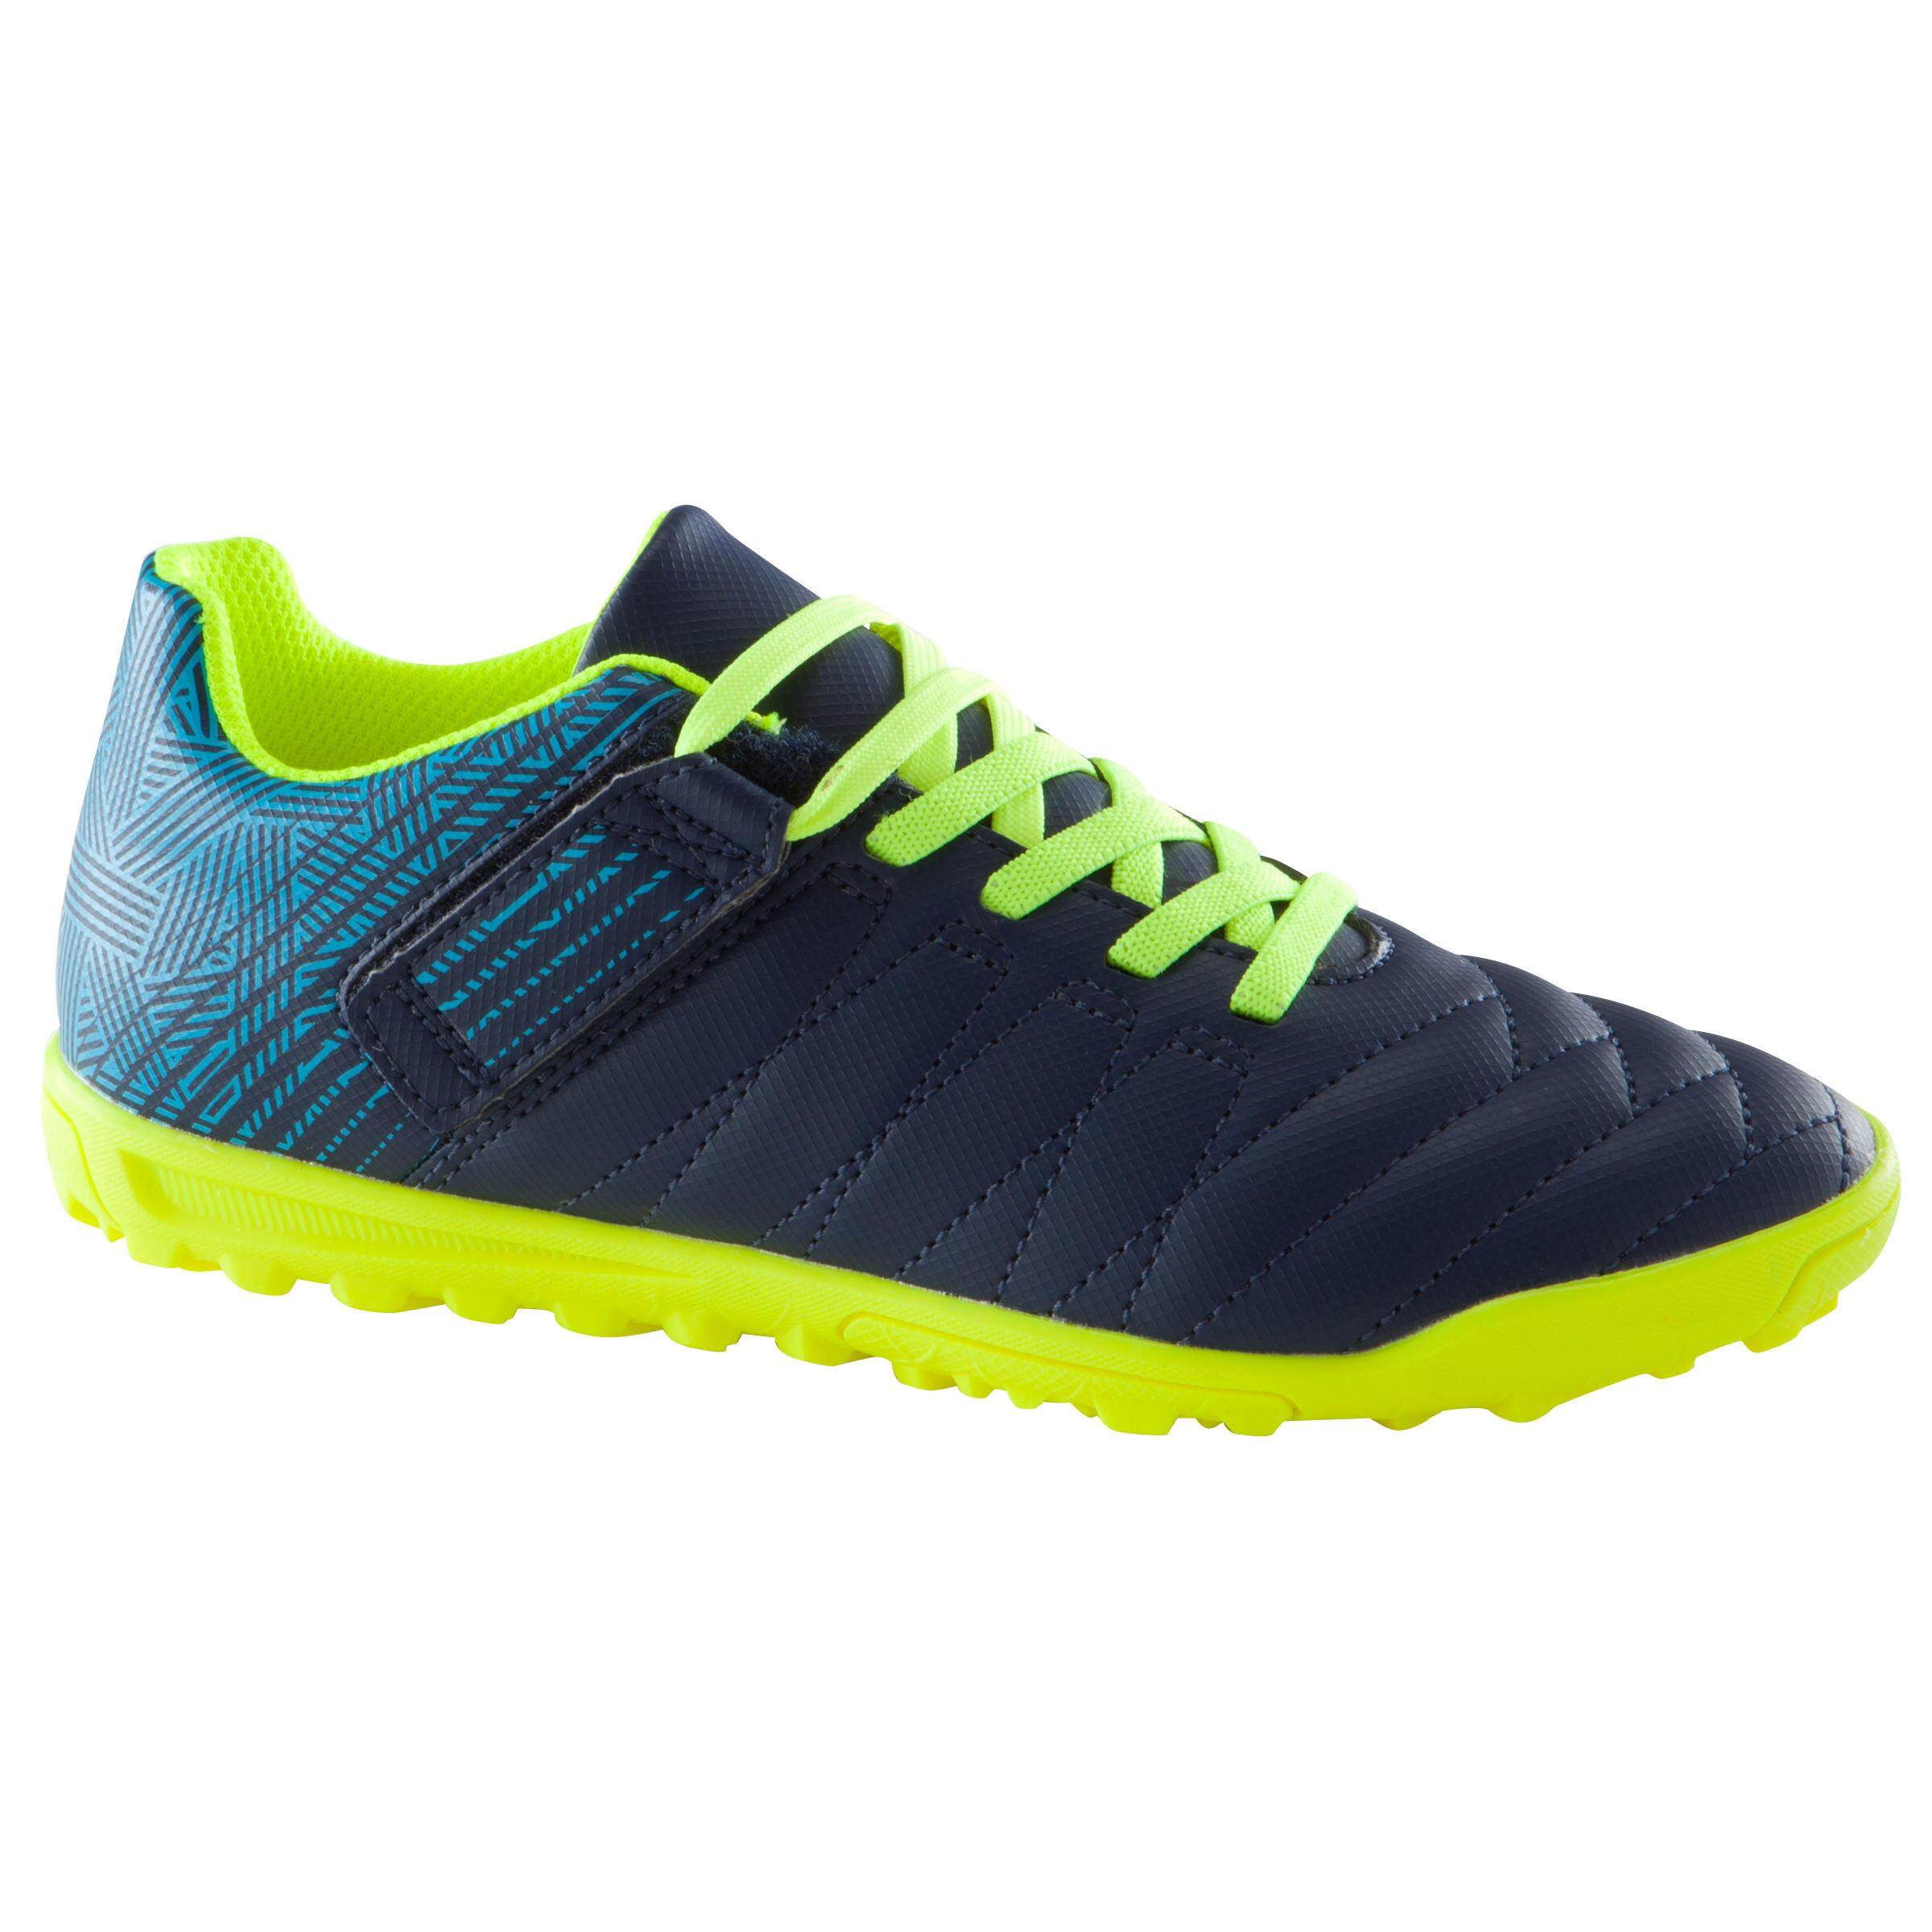 รองเท้าฟุตบอลเด็กสำหรับสนามพื้นแข็งรุ่น CLR 500 HG พร้อมแถบรัดแบบตีนตุ๊กแก (สีน้ำเงิน/เหลือง)